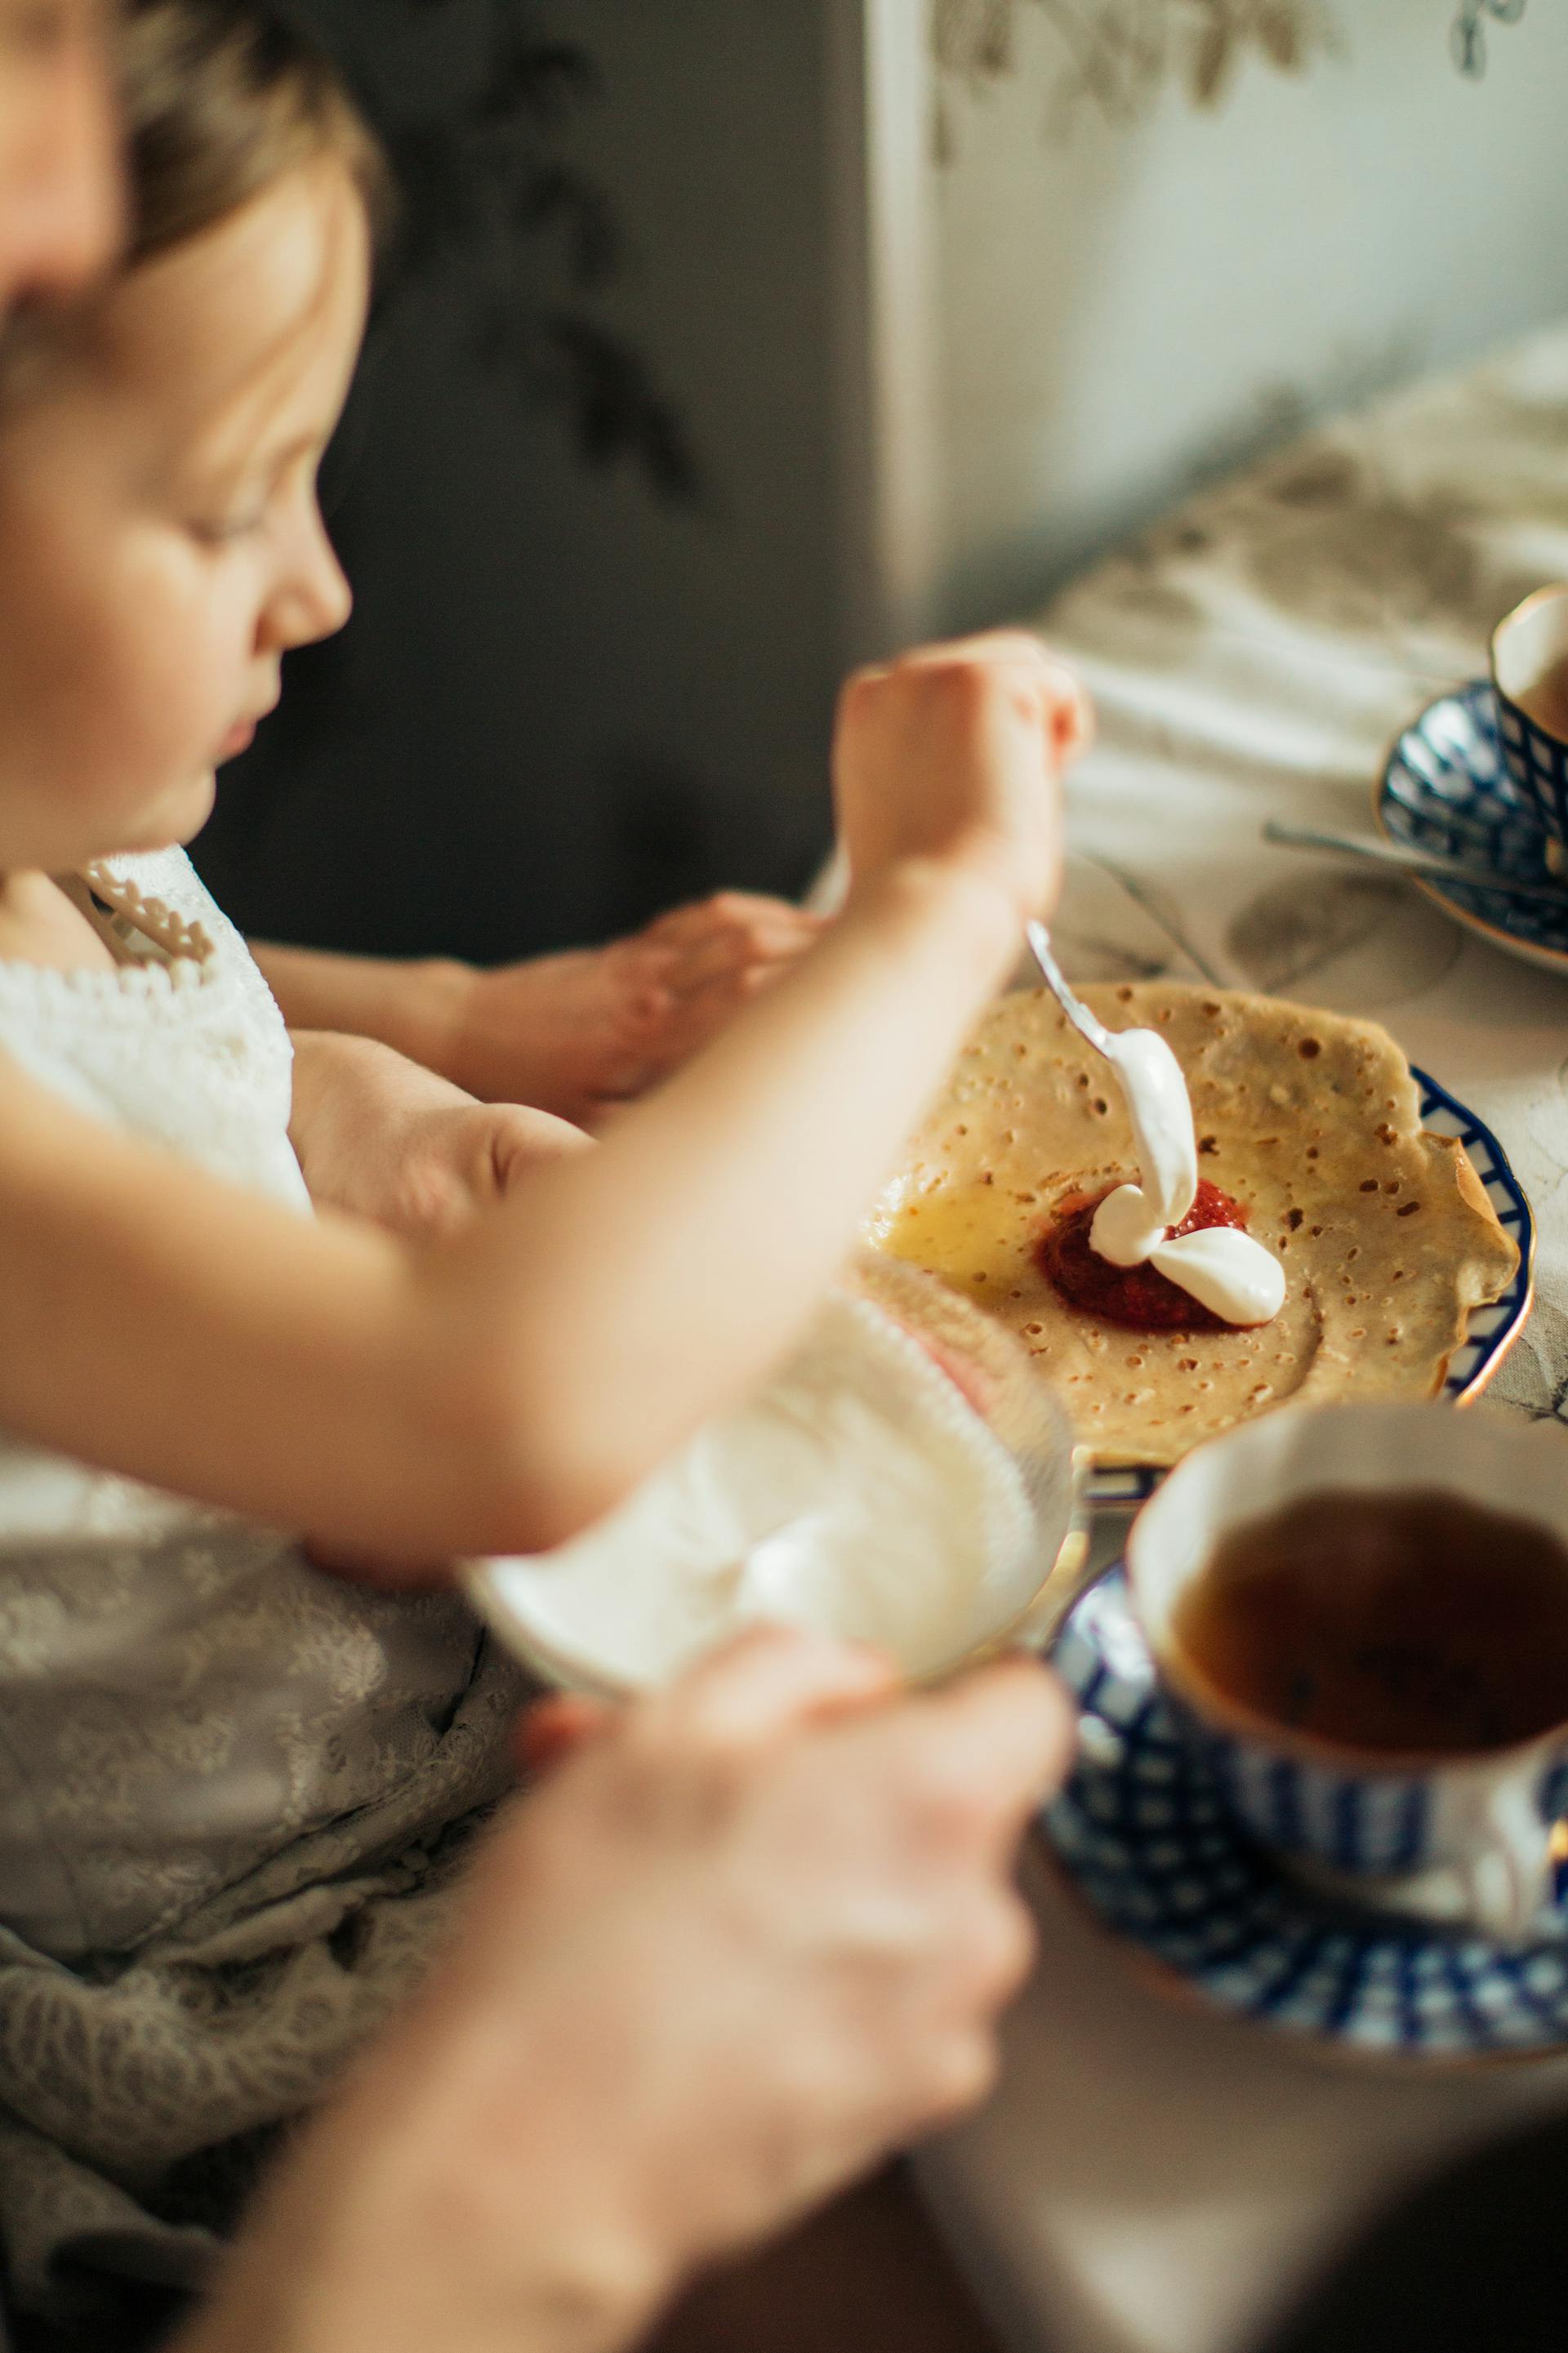 Une jeune fille étalant de la confiture et de la crème sur une crêpe | Source : Pexels